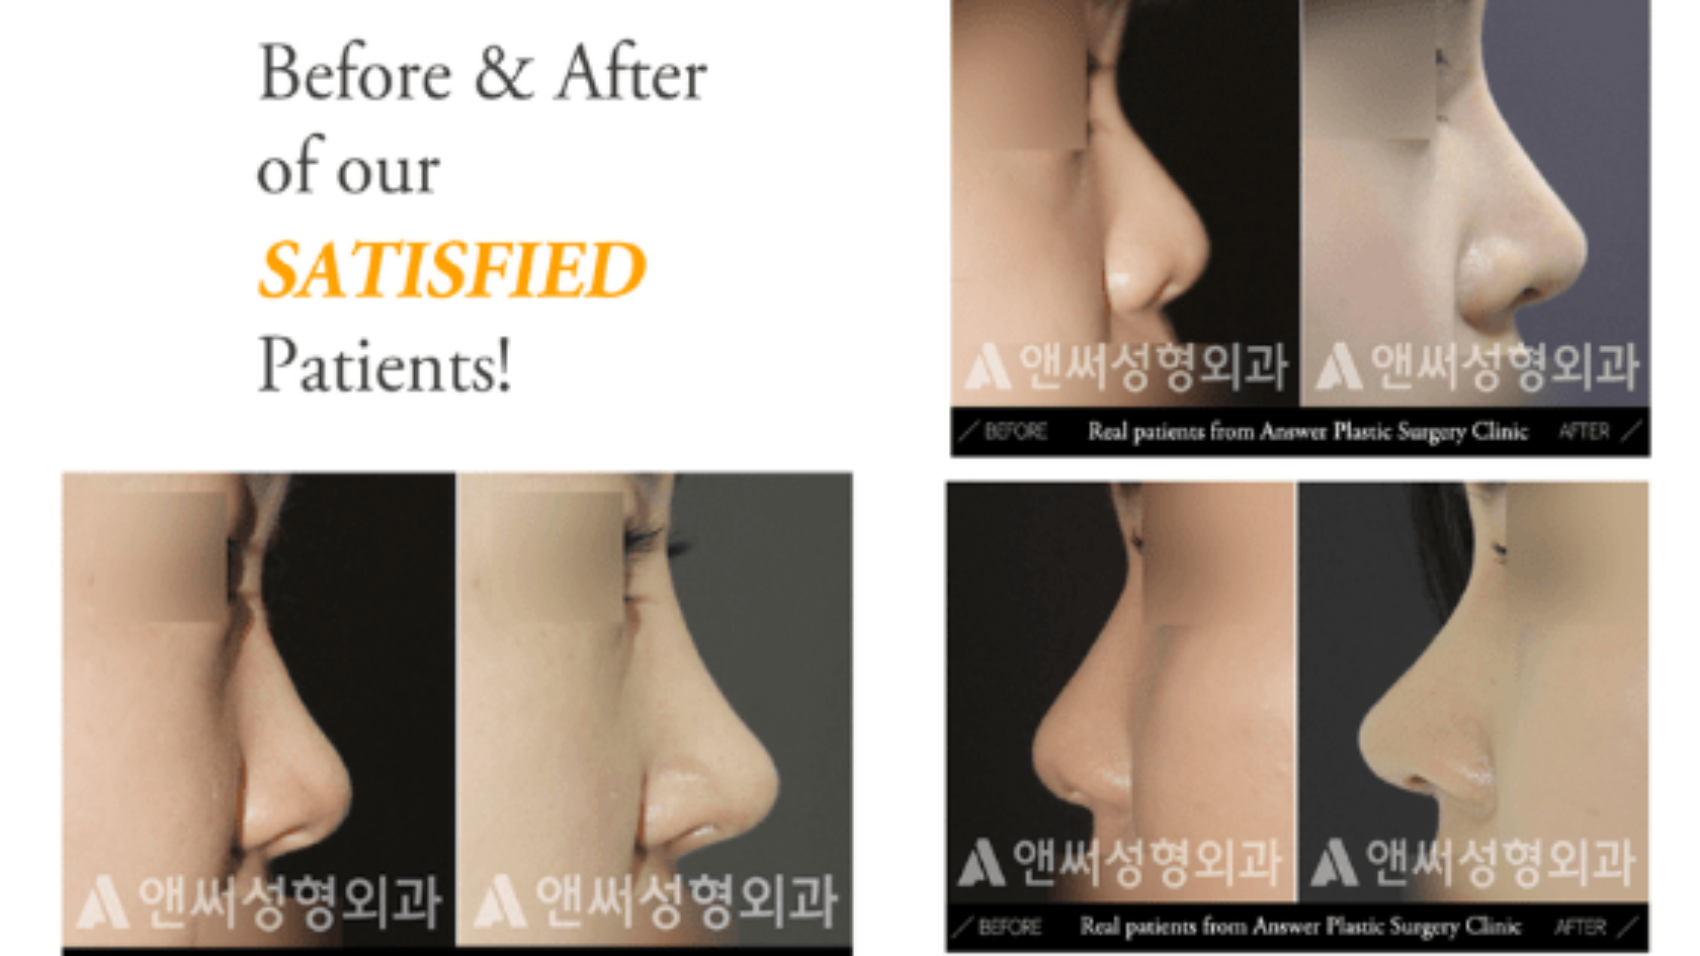 rhinoplastic surgery in korea